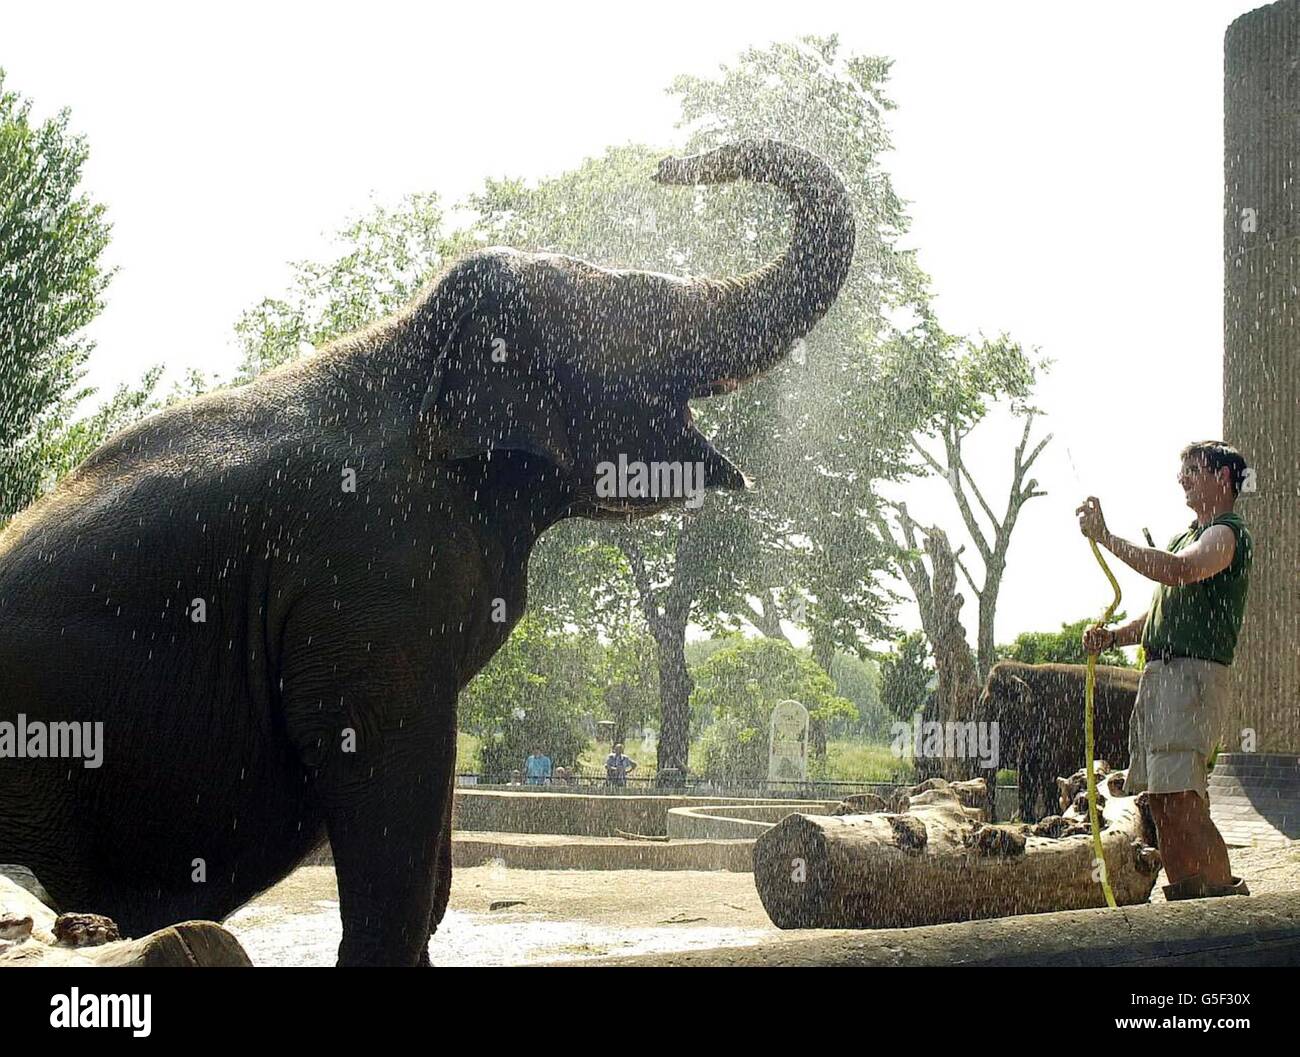 Layang-Layang, un elefante malasio que se regaba por su guarda, Jim Robson en el Zoo de Londres, cuando las temperaturas se elevaban en la capital. Se predijo que las temperaturas aumentaran a 29 grados Celsius (84F) en el centro de Londres y el sureste. * El tiempo caluroso debía durar hasta mañana, con un clima más fresco en el 27/6/01. Foto de stock